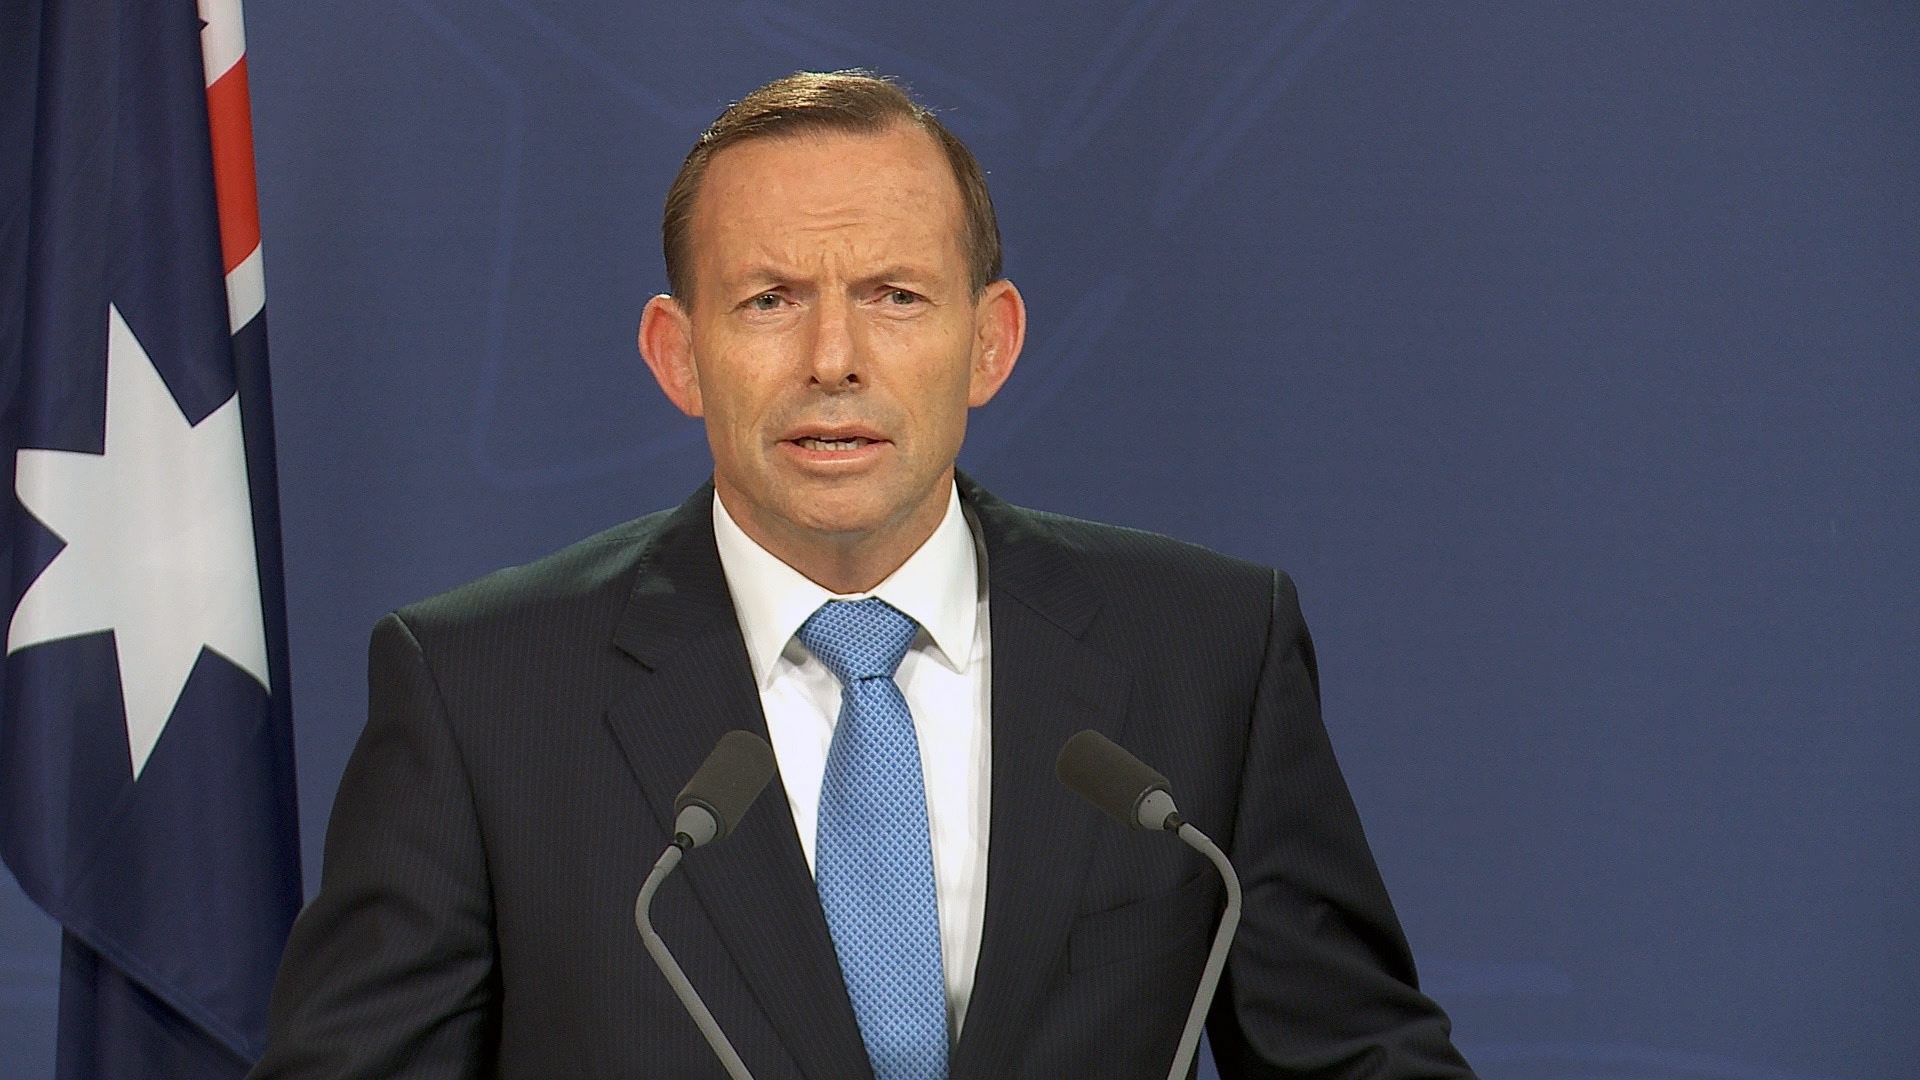 Former Australian prime minister Tony Abbott. Photo: EPA